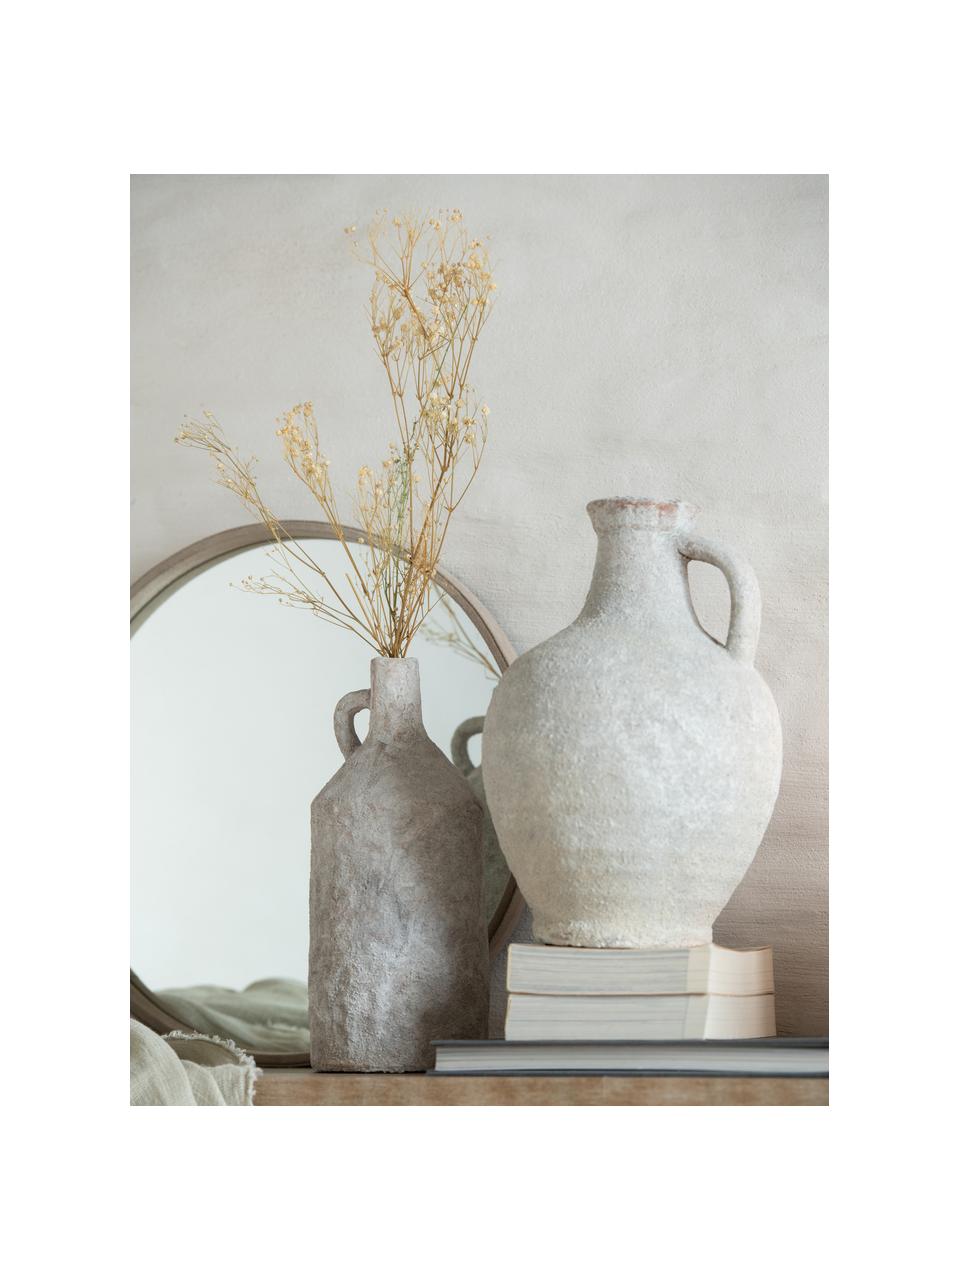 Vaso in ceramica color bianco crema Rustic, Ceramica, Bianco crema, Ø 21 x Alt. 30 cm